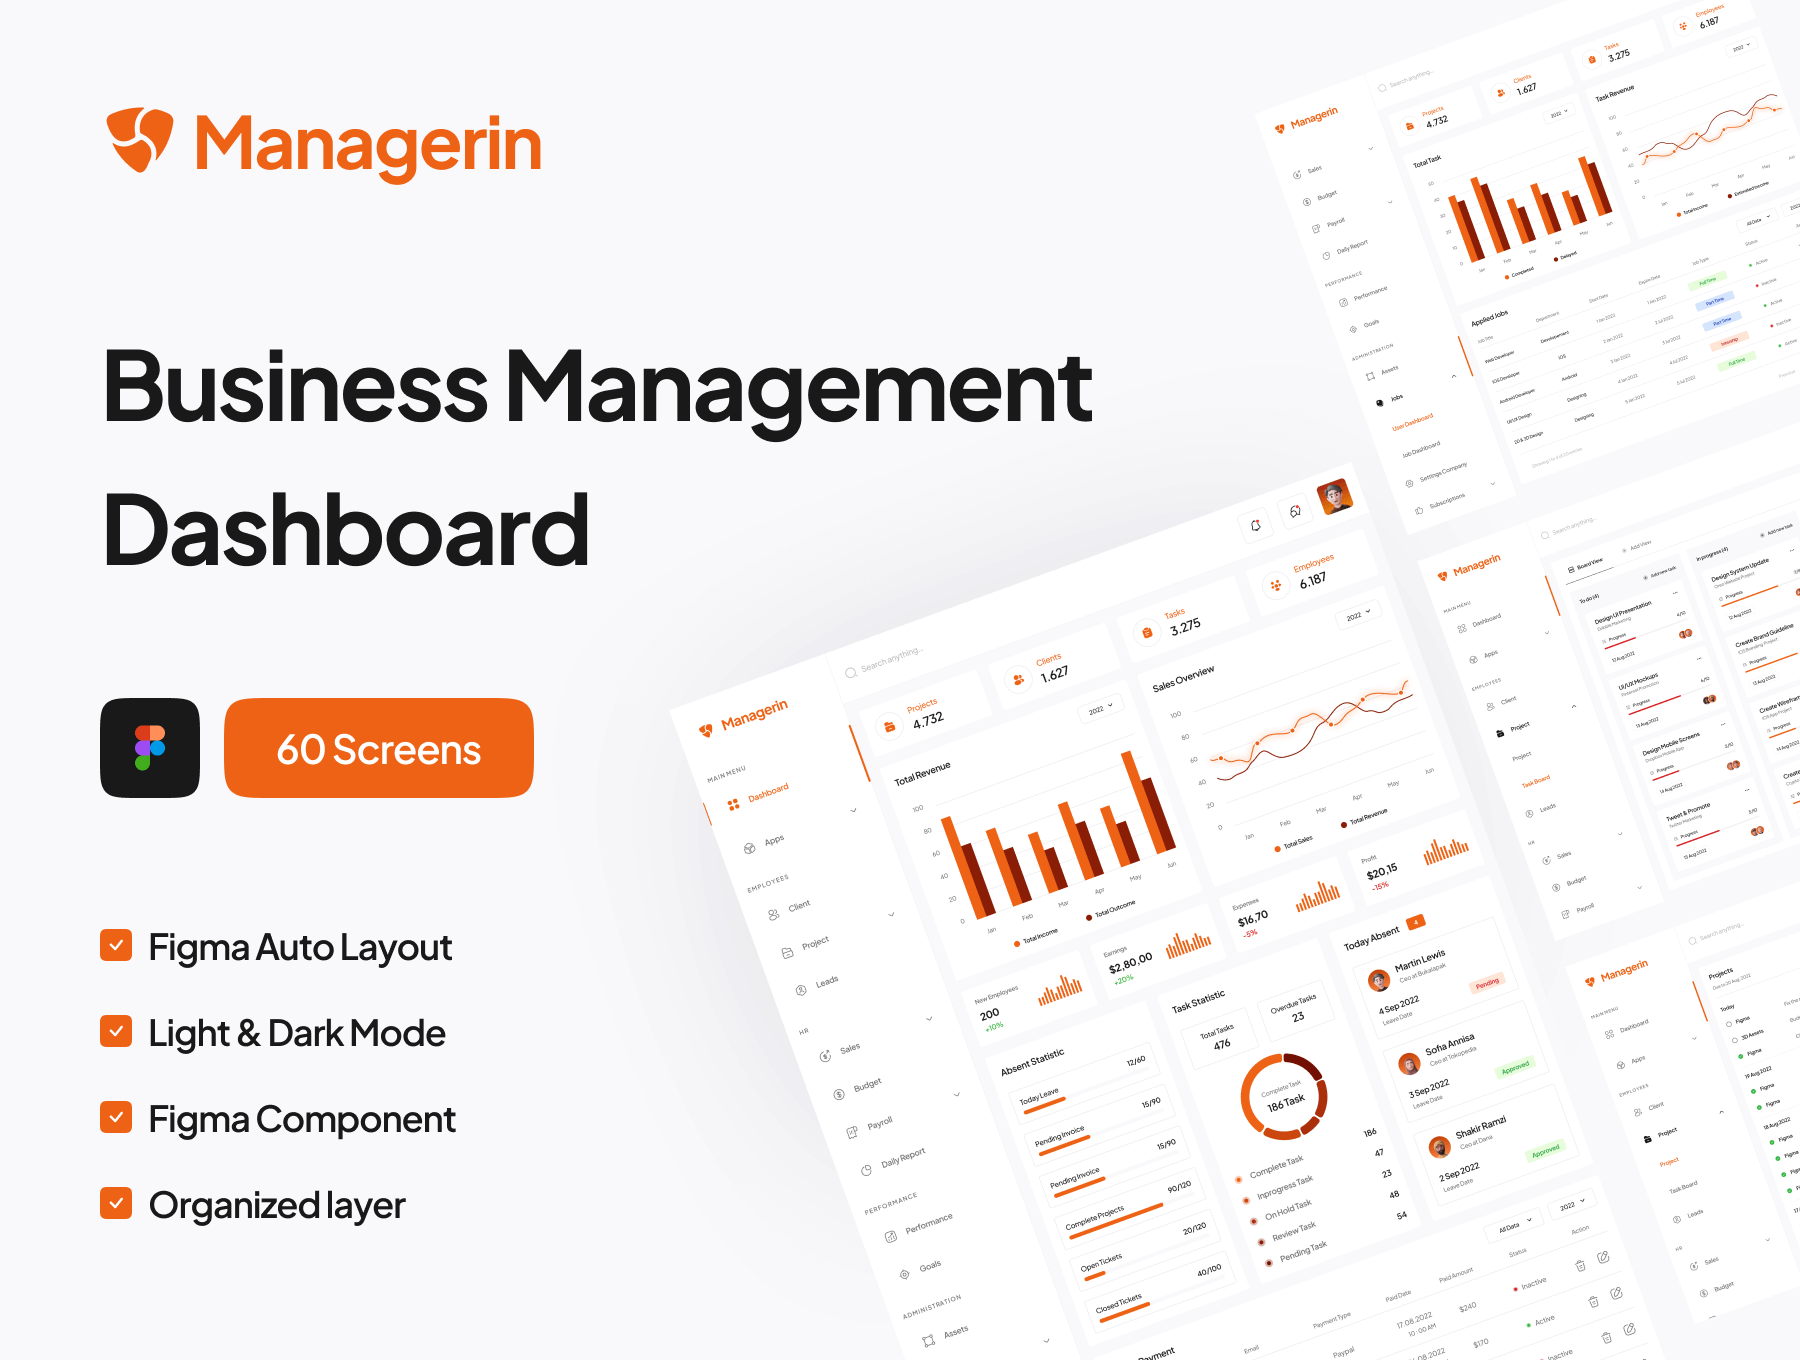 业务管理仪表板UI套件模板素材ResourceManagerin – Business Management Dashboard UI Kit插图